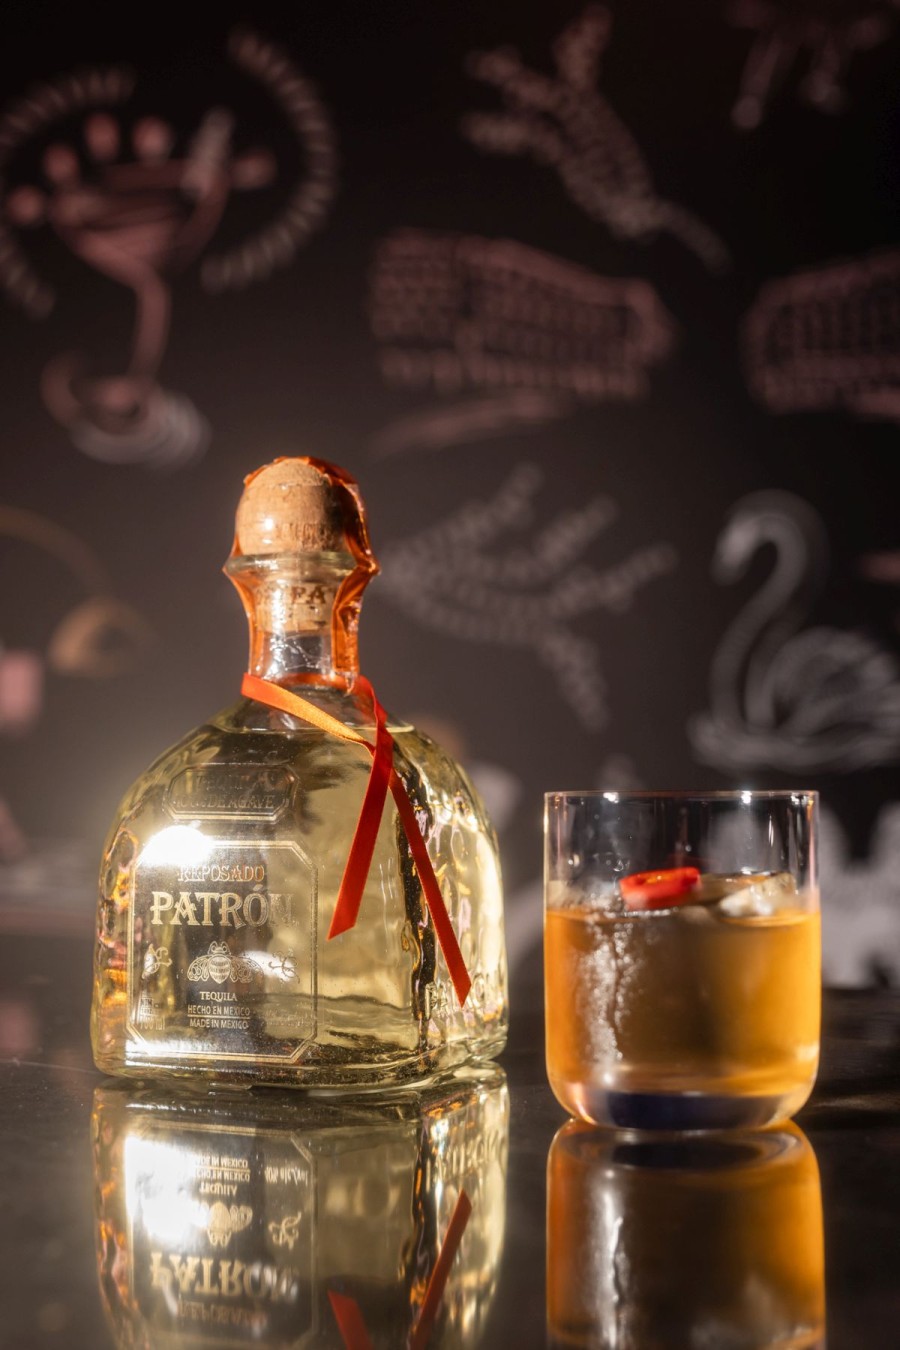 Το GLOW 200 Anniversary cocktail party x Patrón super premium tequila έγινε το απόλυτο talk of the town της Θεσσαλονίκης και επισφραγίστηκε με τη λαμπερή παρουσία του Νίκου Αλιάγα - Φωτογραφία 54